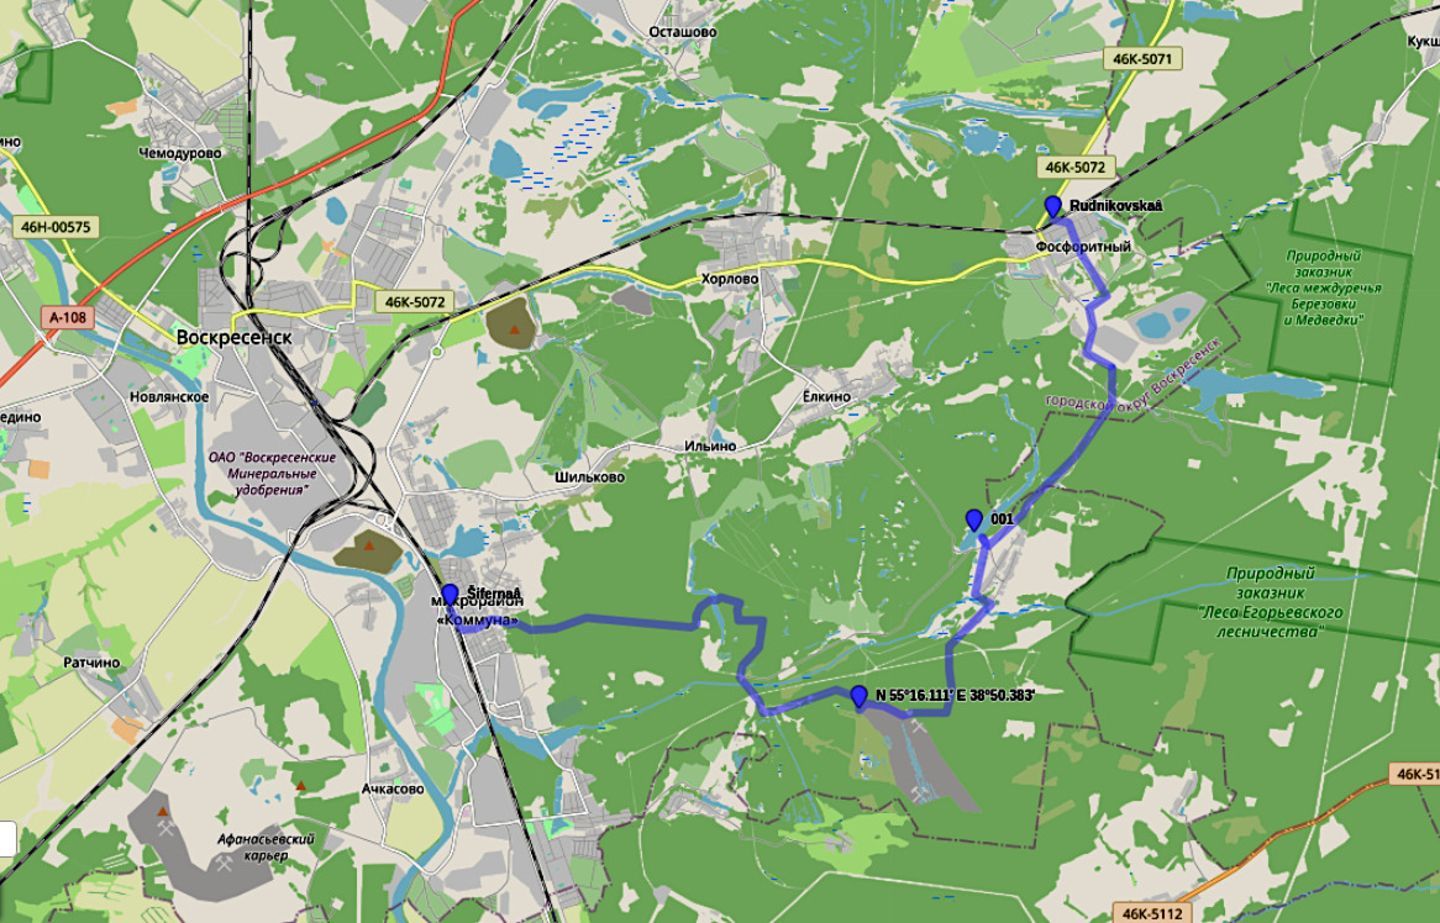 Электричка д2 маршрут. Карта электричек д2. Александров город на карте с электричкой. Маршрут д2 и дальше. Икша направление